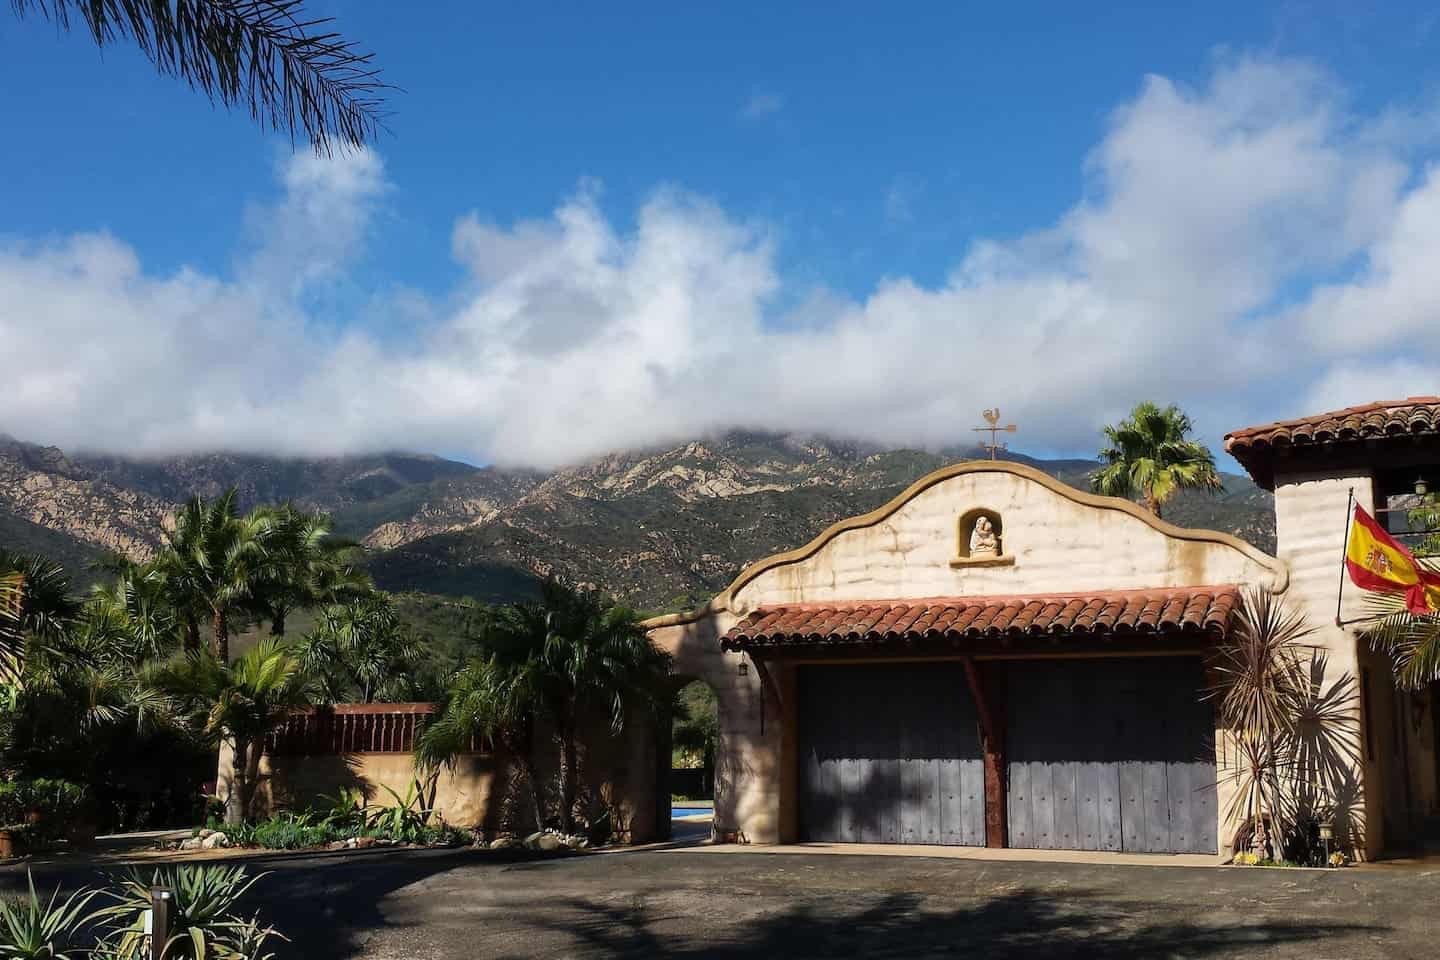 Image of Airbnb rental in Santa Barbara California